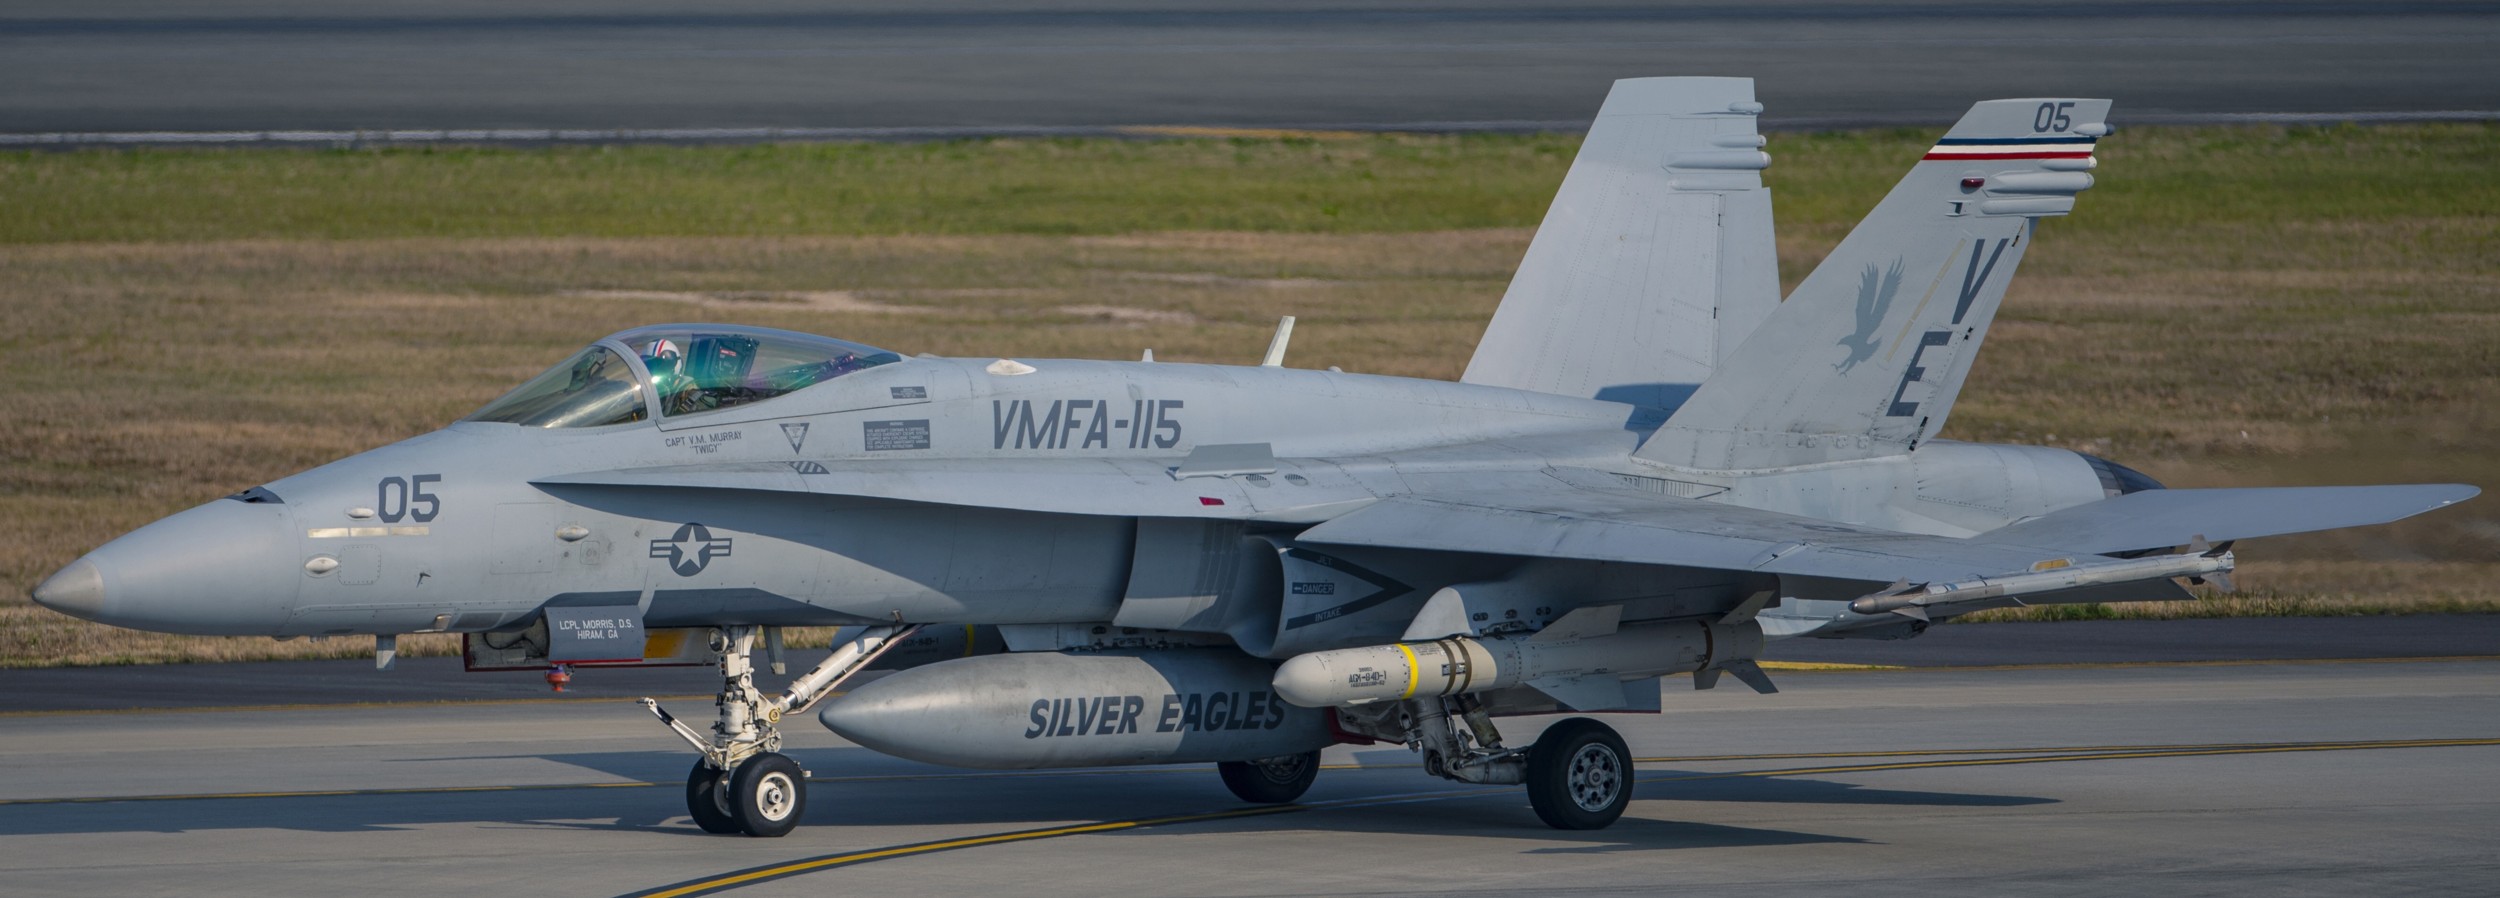 vmfa-115 silver eagles marine fighter attack squadron usmc f/a-18c hornet 192 agm-84 harpoon